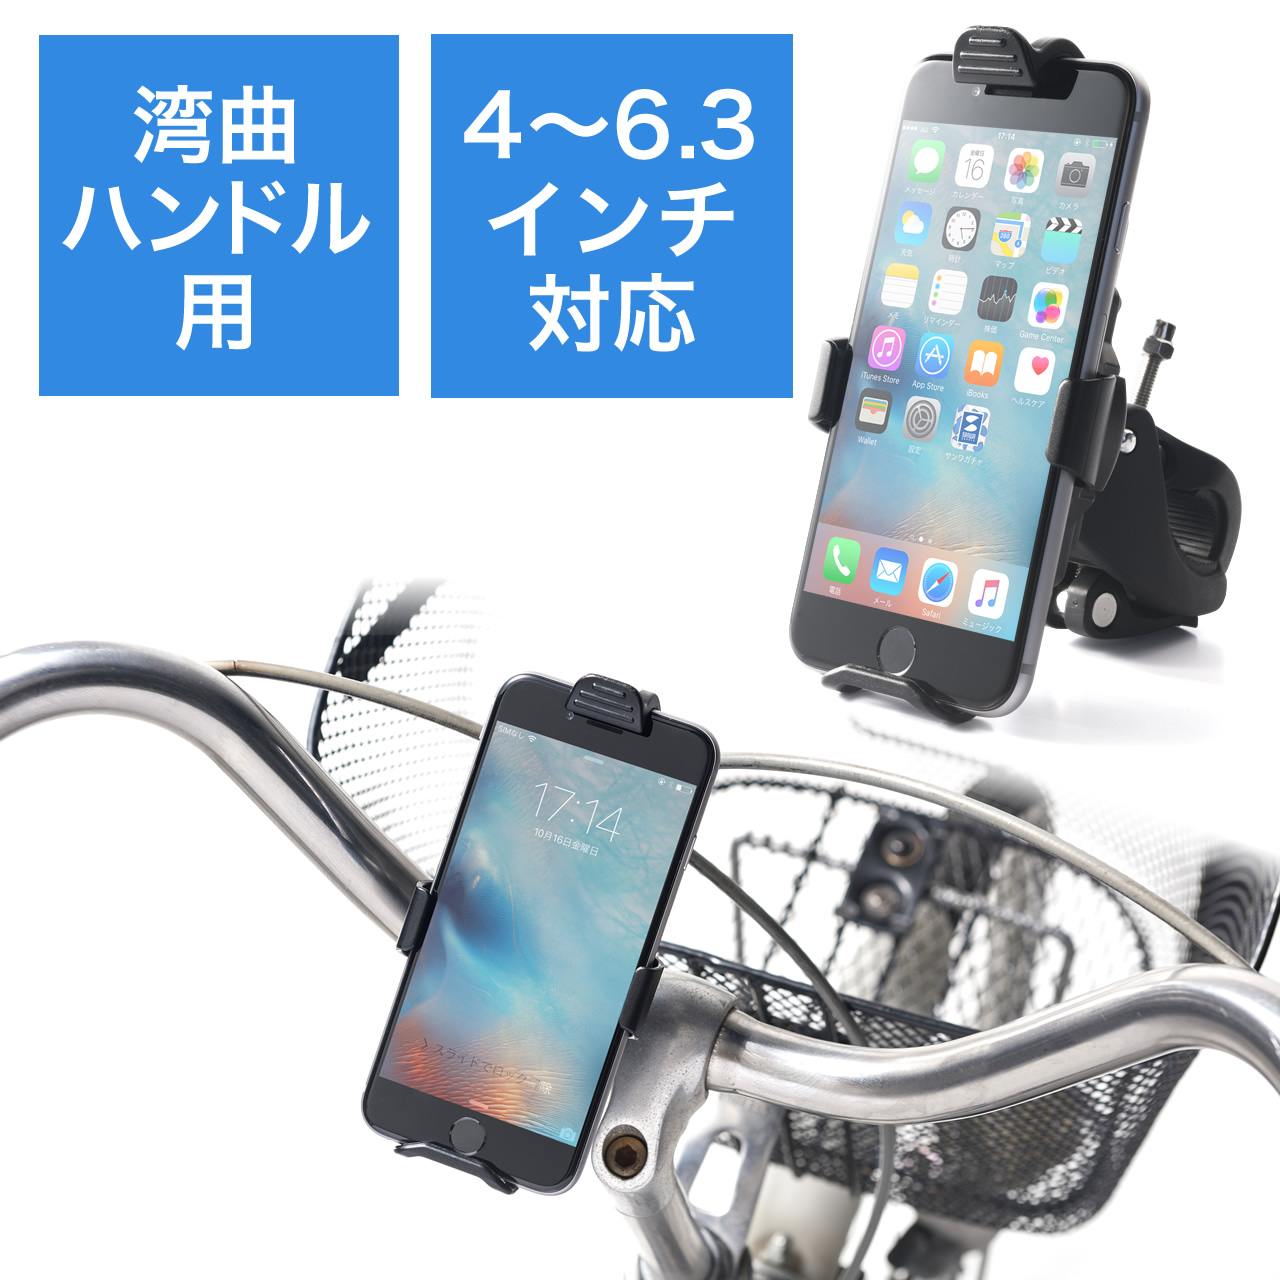 クランプ式 自転車用 スマートフォンホルダー 汎用 スマホ 携帯 固定台